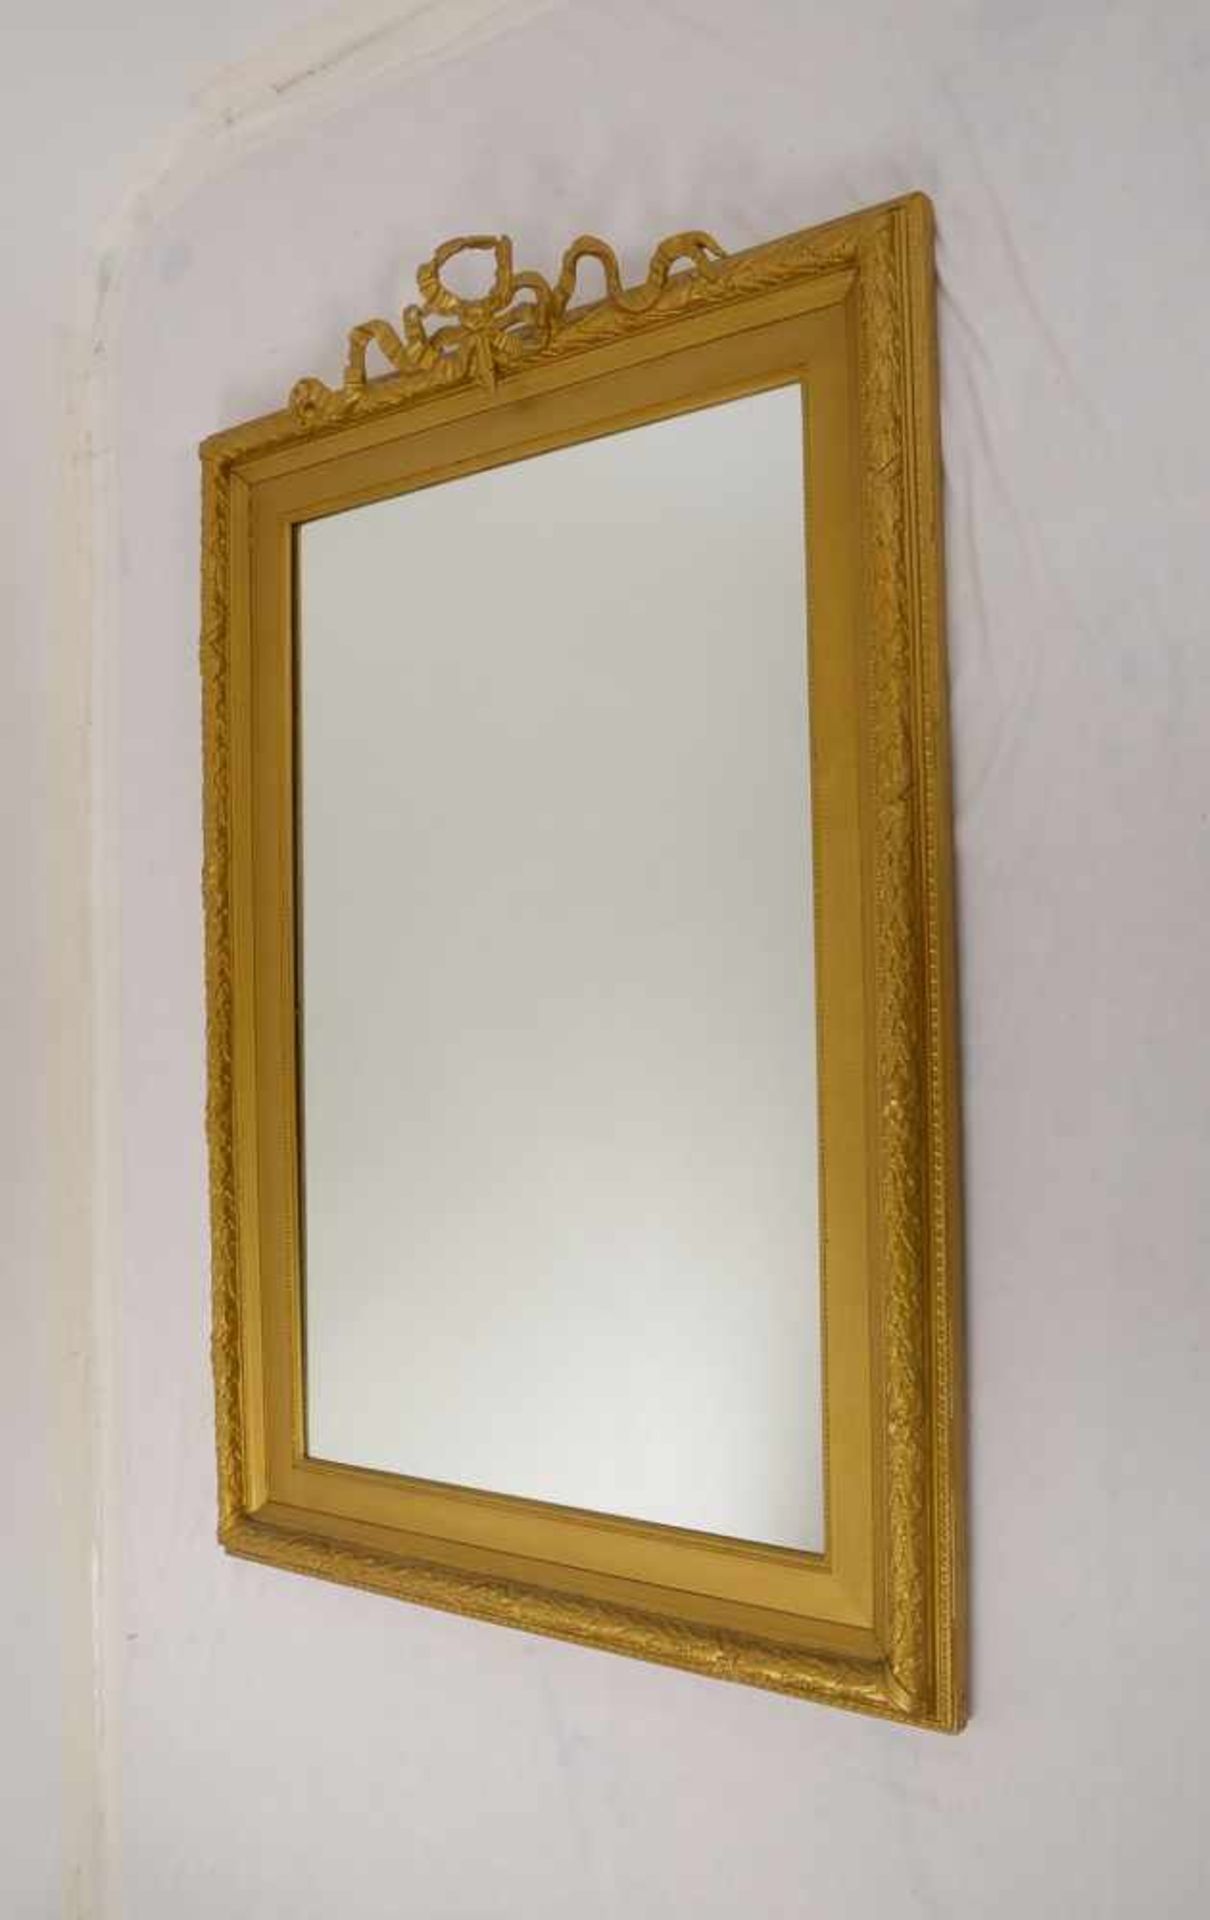 Wandspiegel, im Stuck-Holzrahmen/mit Schleifendekor, Maße 130 x 90 cm; mit Konsole, Maße 130 x 22